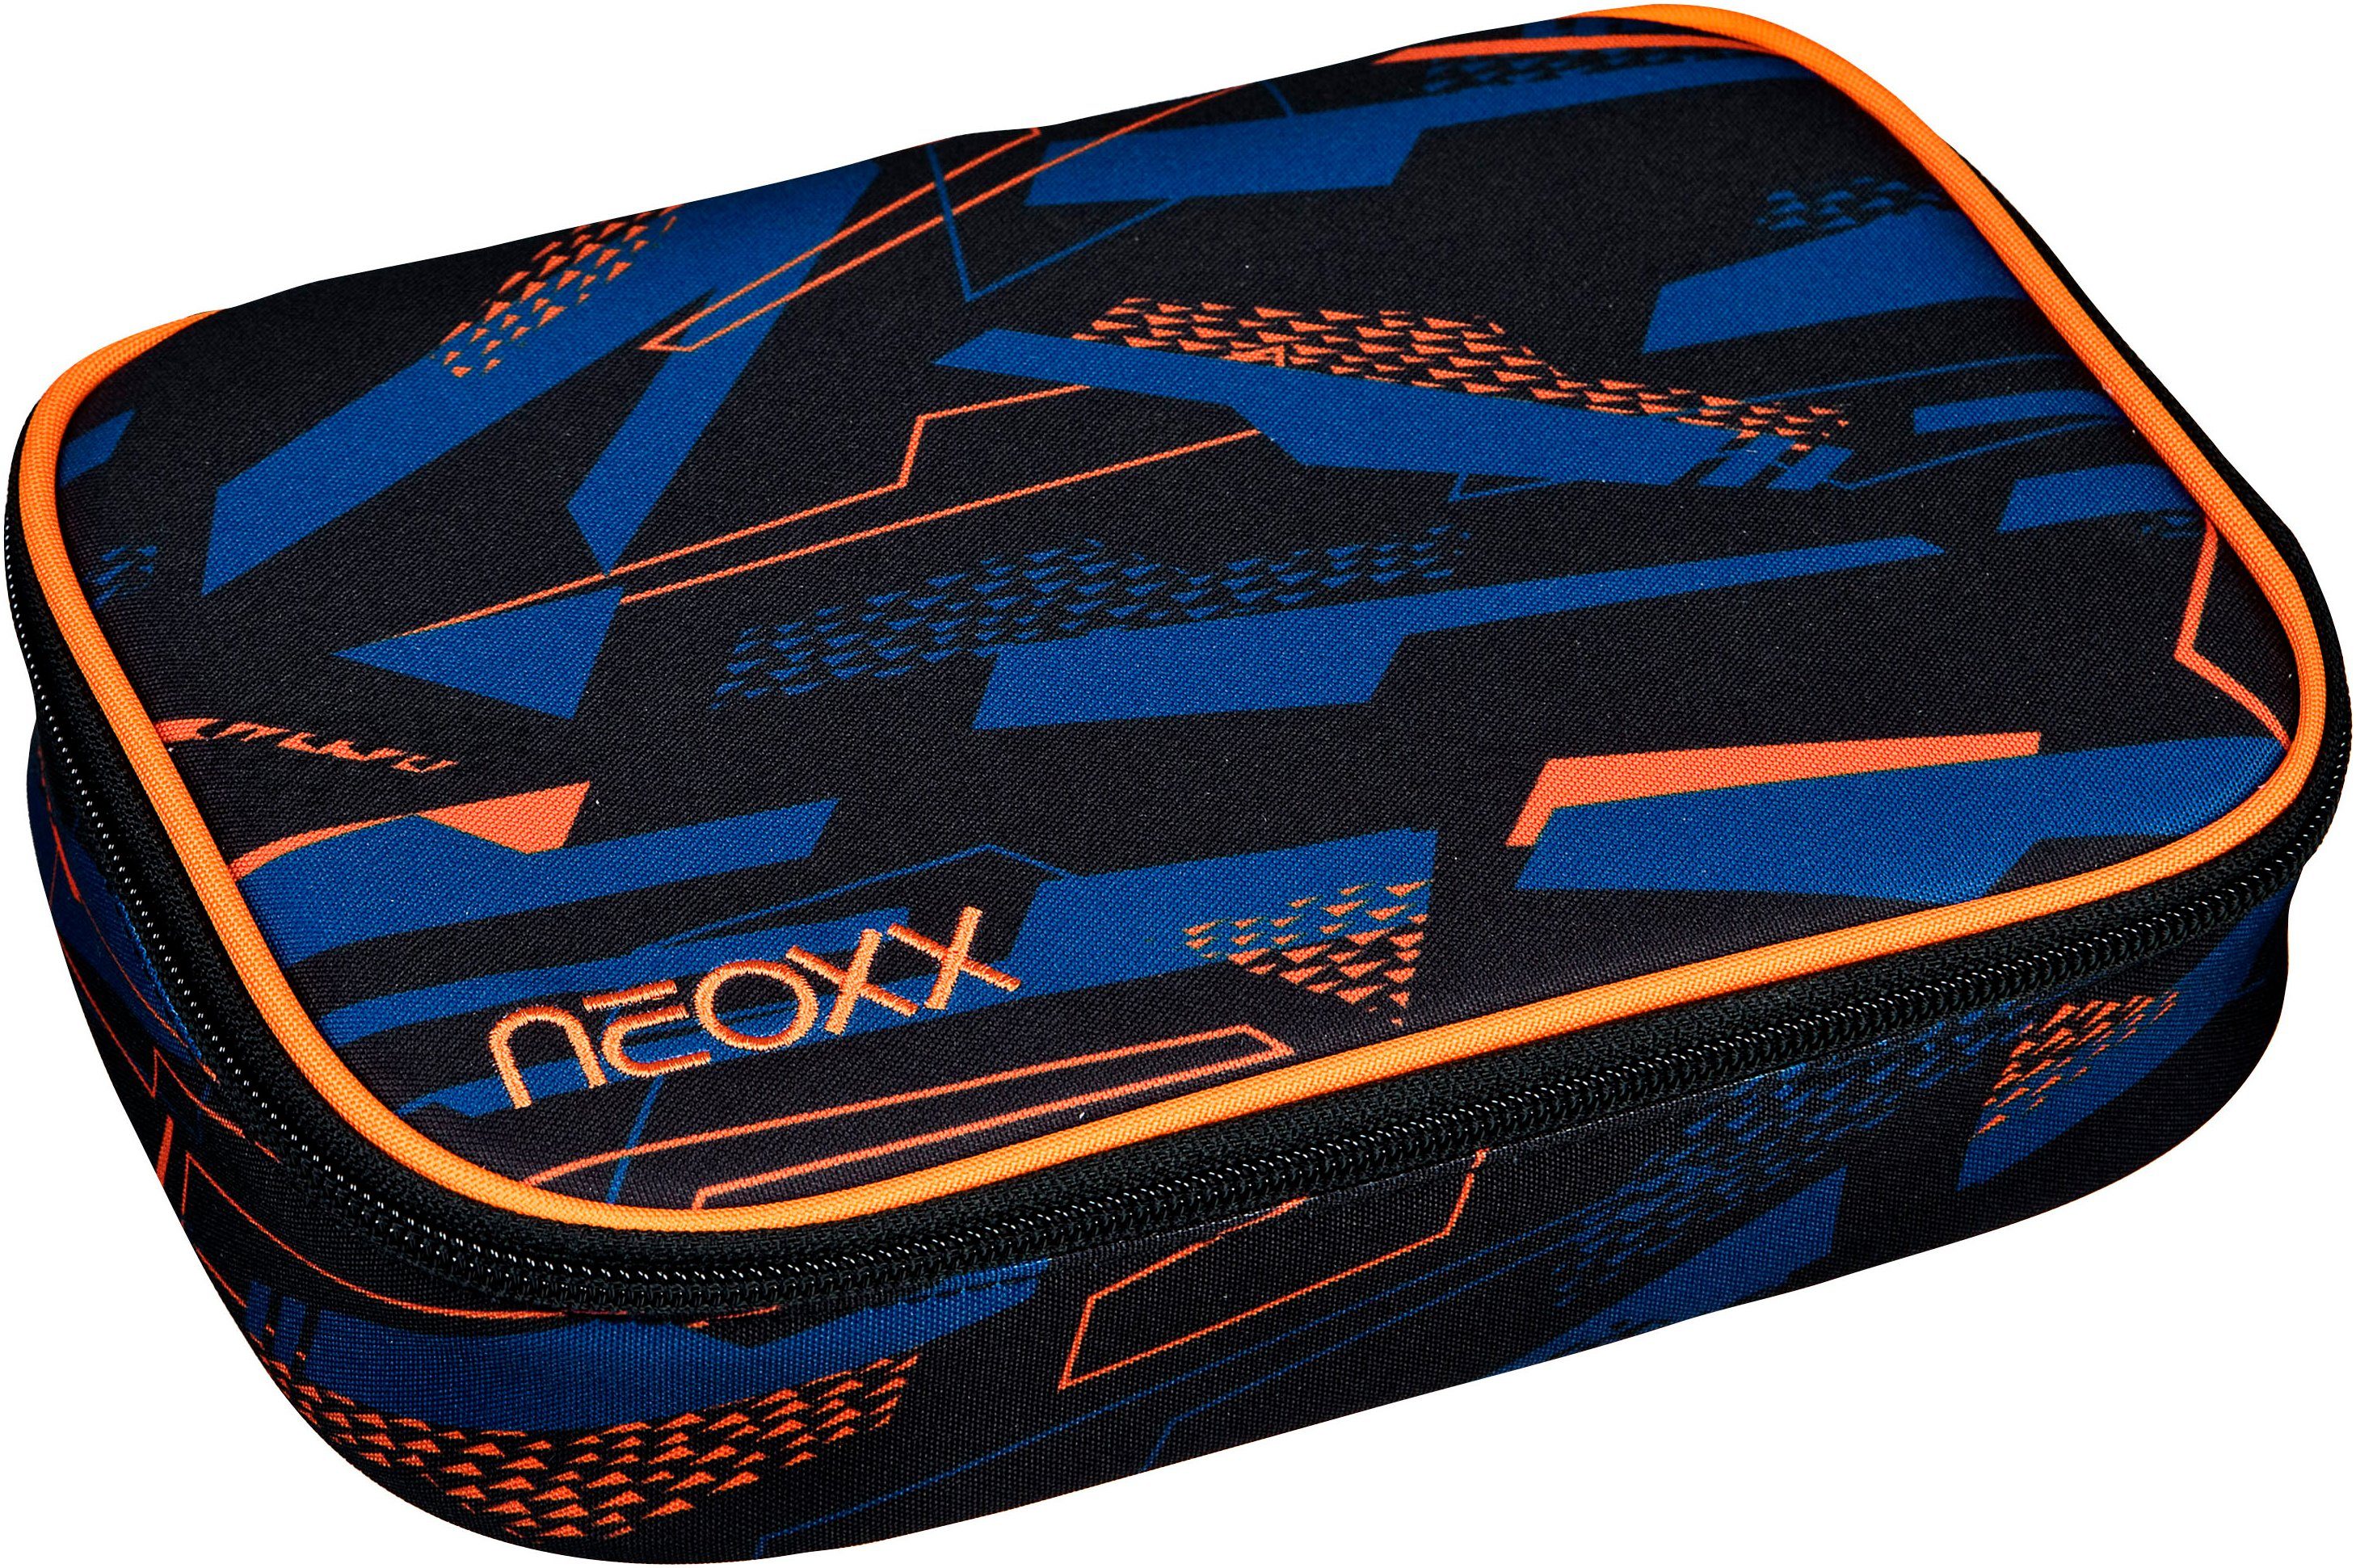 neoxx Schreibgeräteetui Schlamperbox, Dunk, Streetlight, teilweise aus recyceltem Material